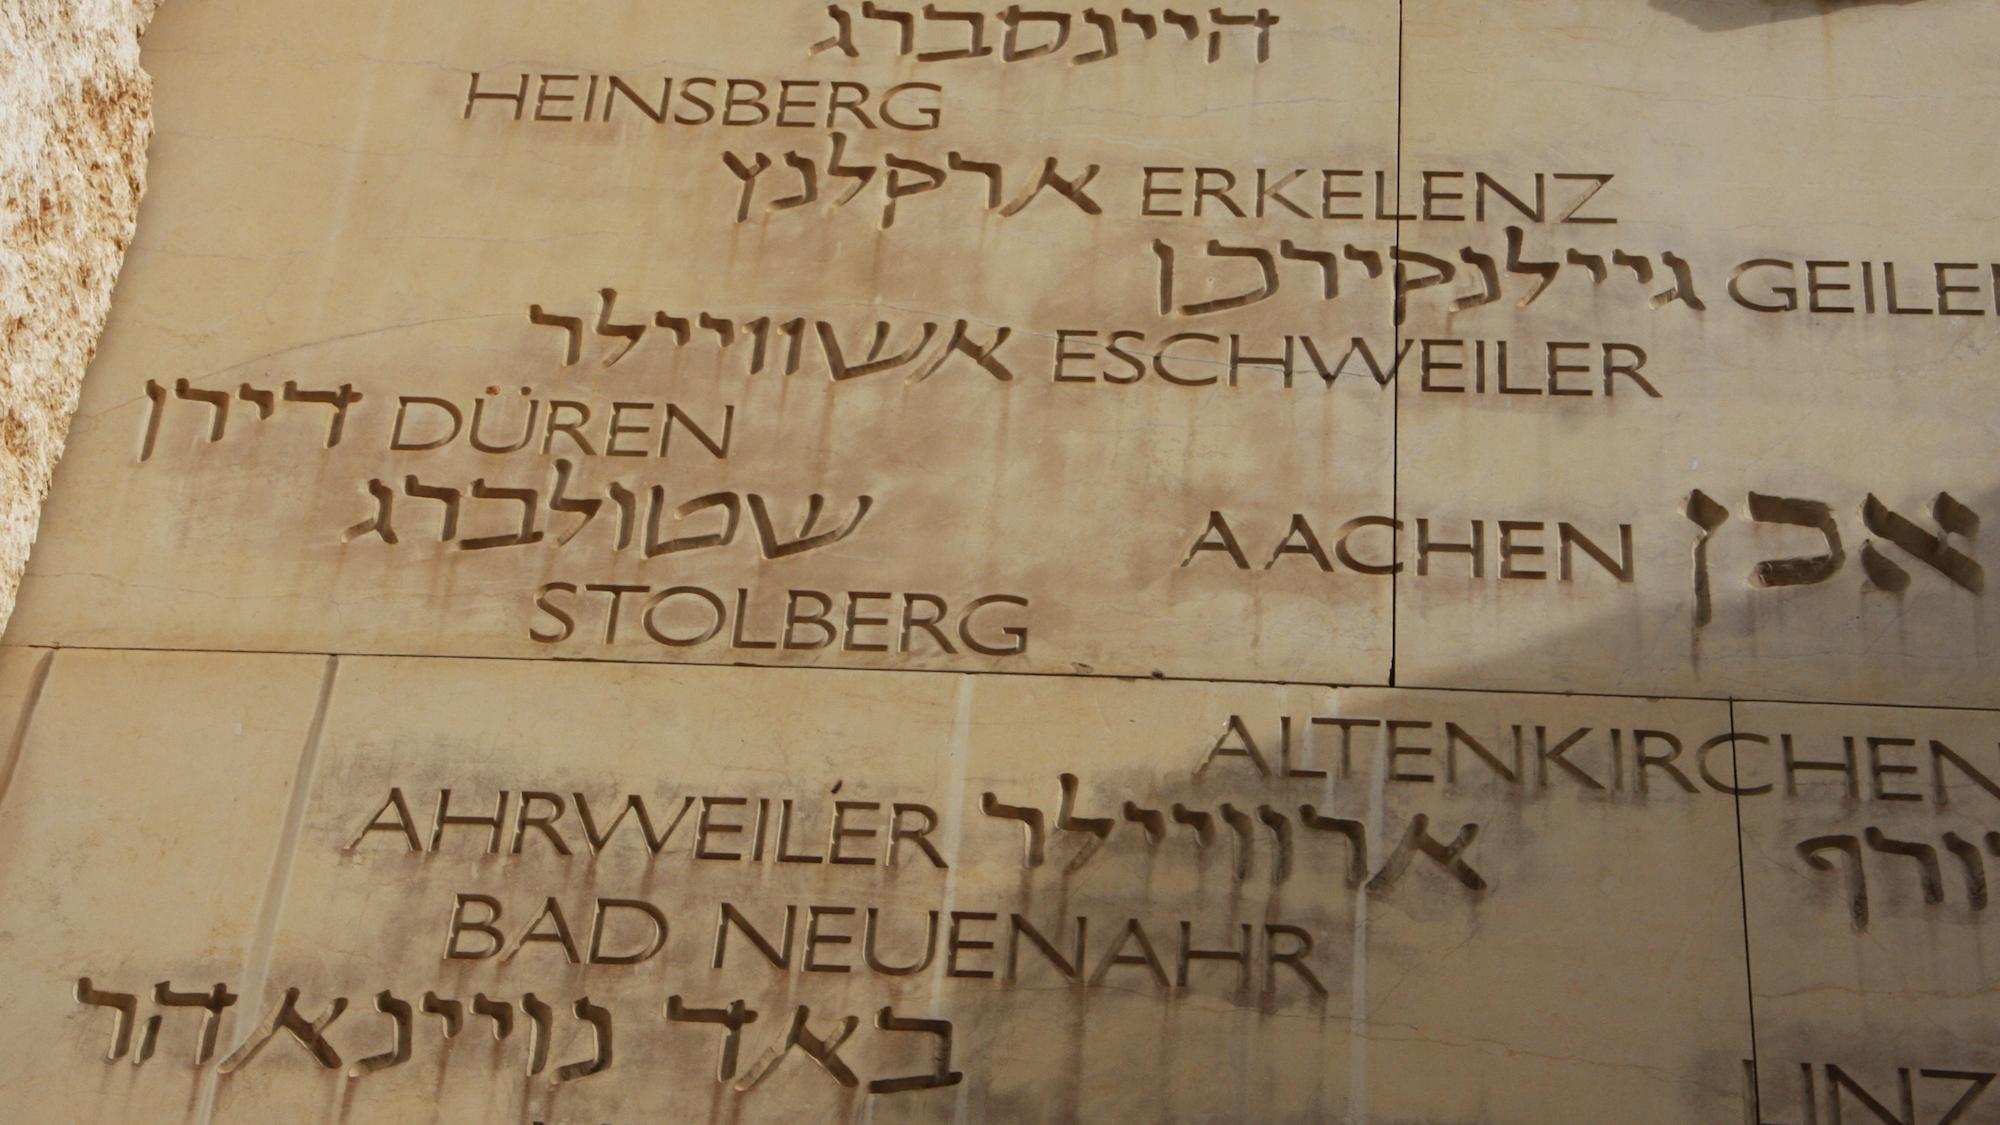 Das Tal der Gemeinden in Yad Vashem erinnert an 5000 jüdische Gemeinden, die im Holocaust zerstört wurden oder nur knapp überlebten. (c) Stephan Johnen